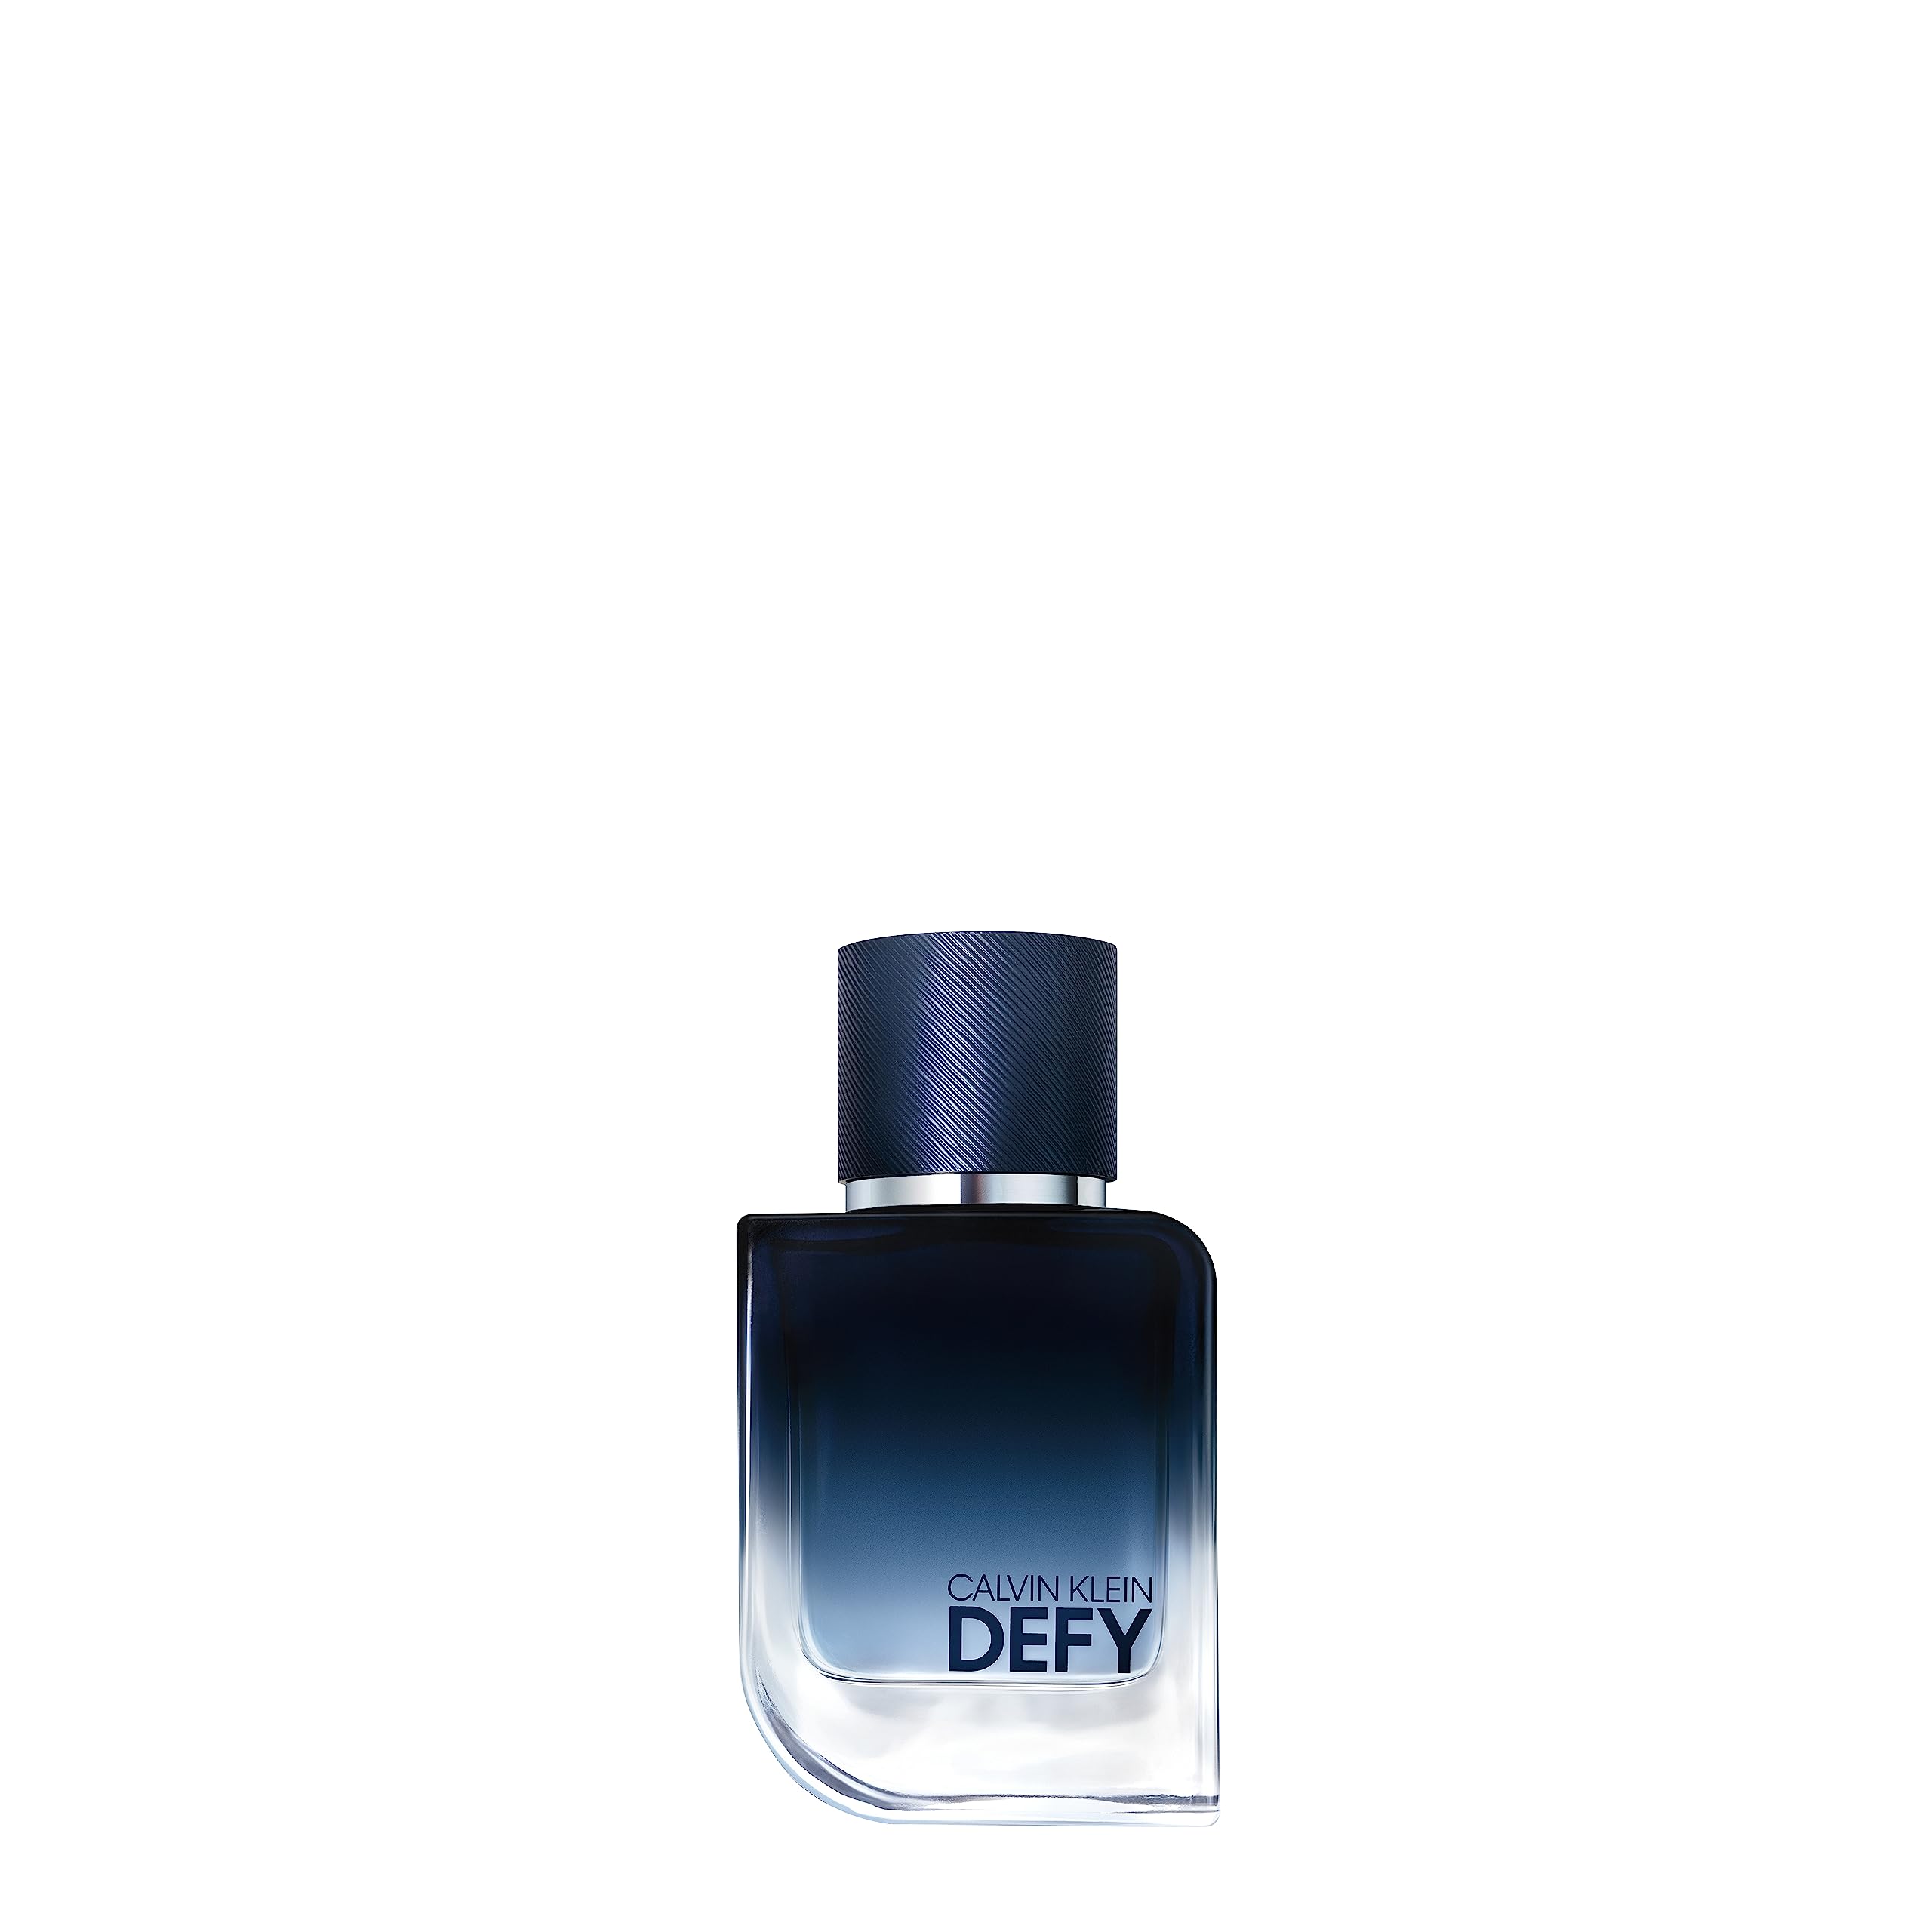 Calvin Klein Defy for Men Eau de Parfum - Notes of fresh wood and leather